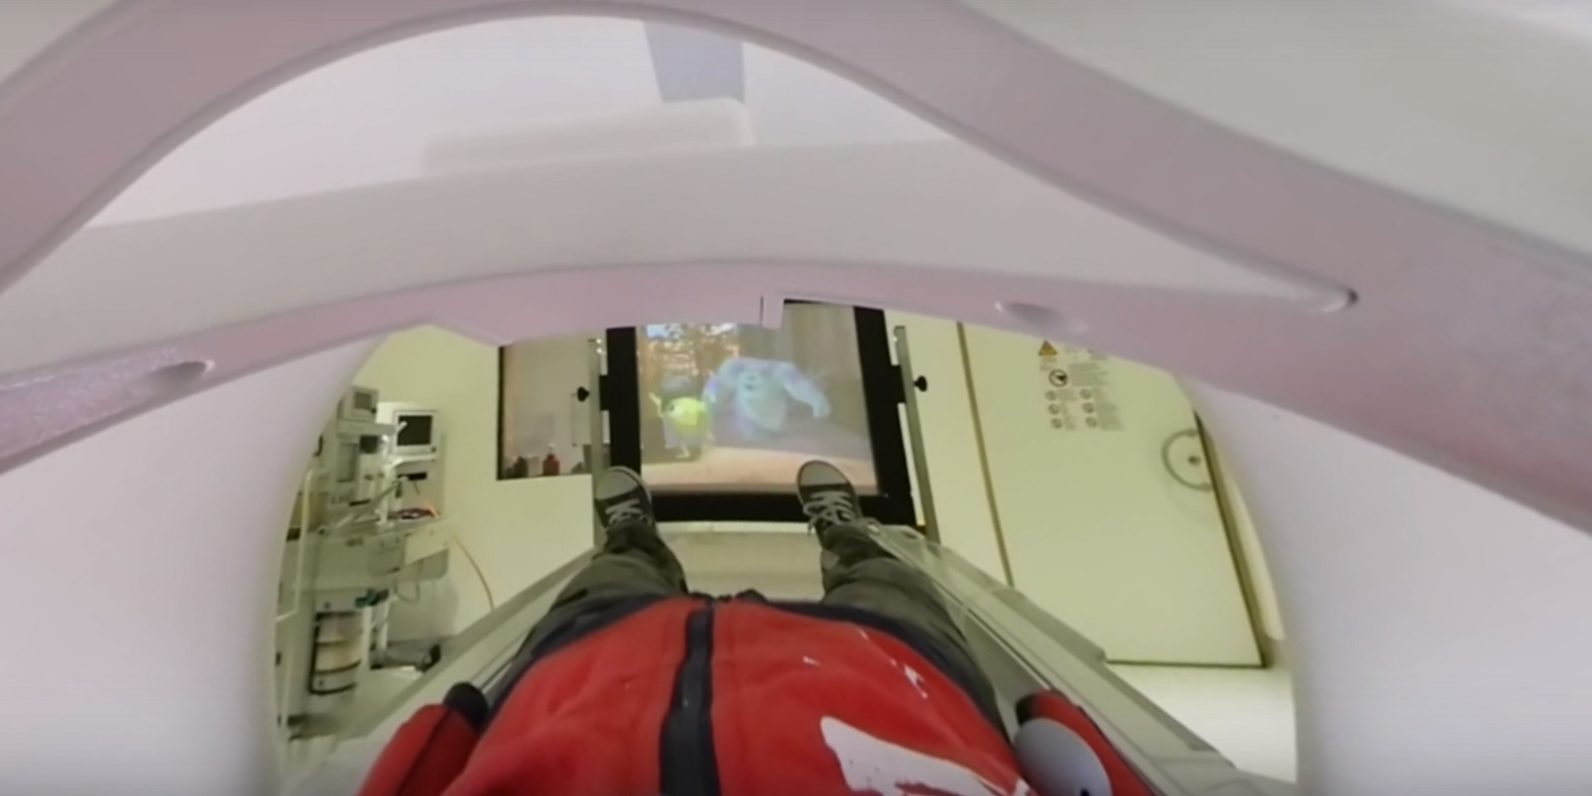 โรงพยาบาลแห่งหนึ่งนำเทคโนโลยี VR มาช่วยให้เด็กๆเรียนรู้ขั้นตอนการตรวจ MRI